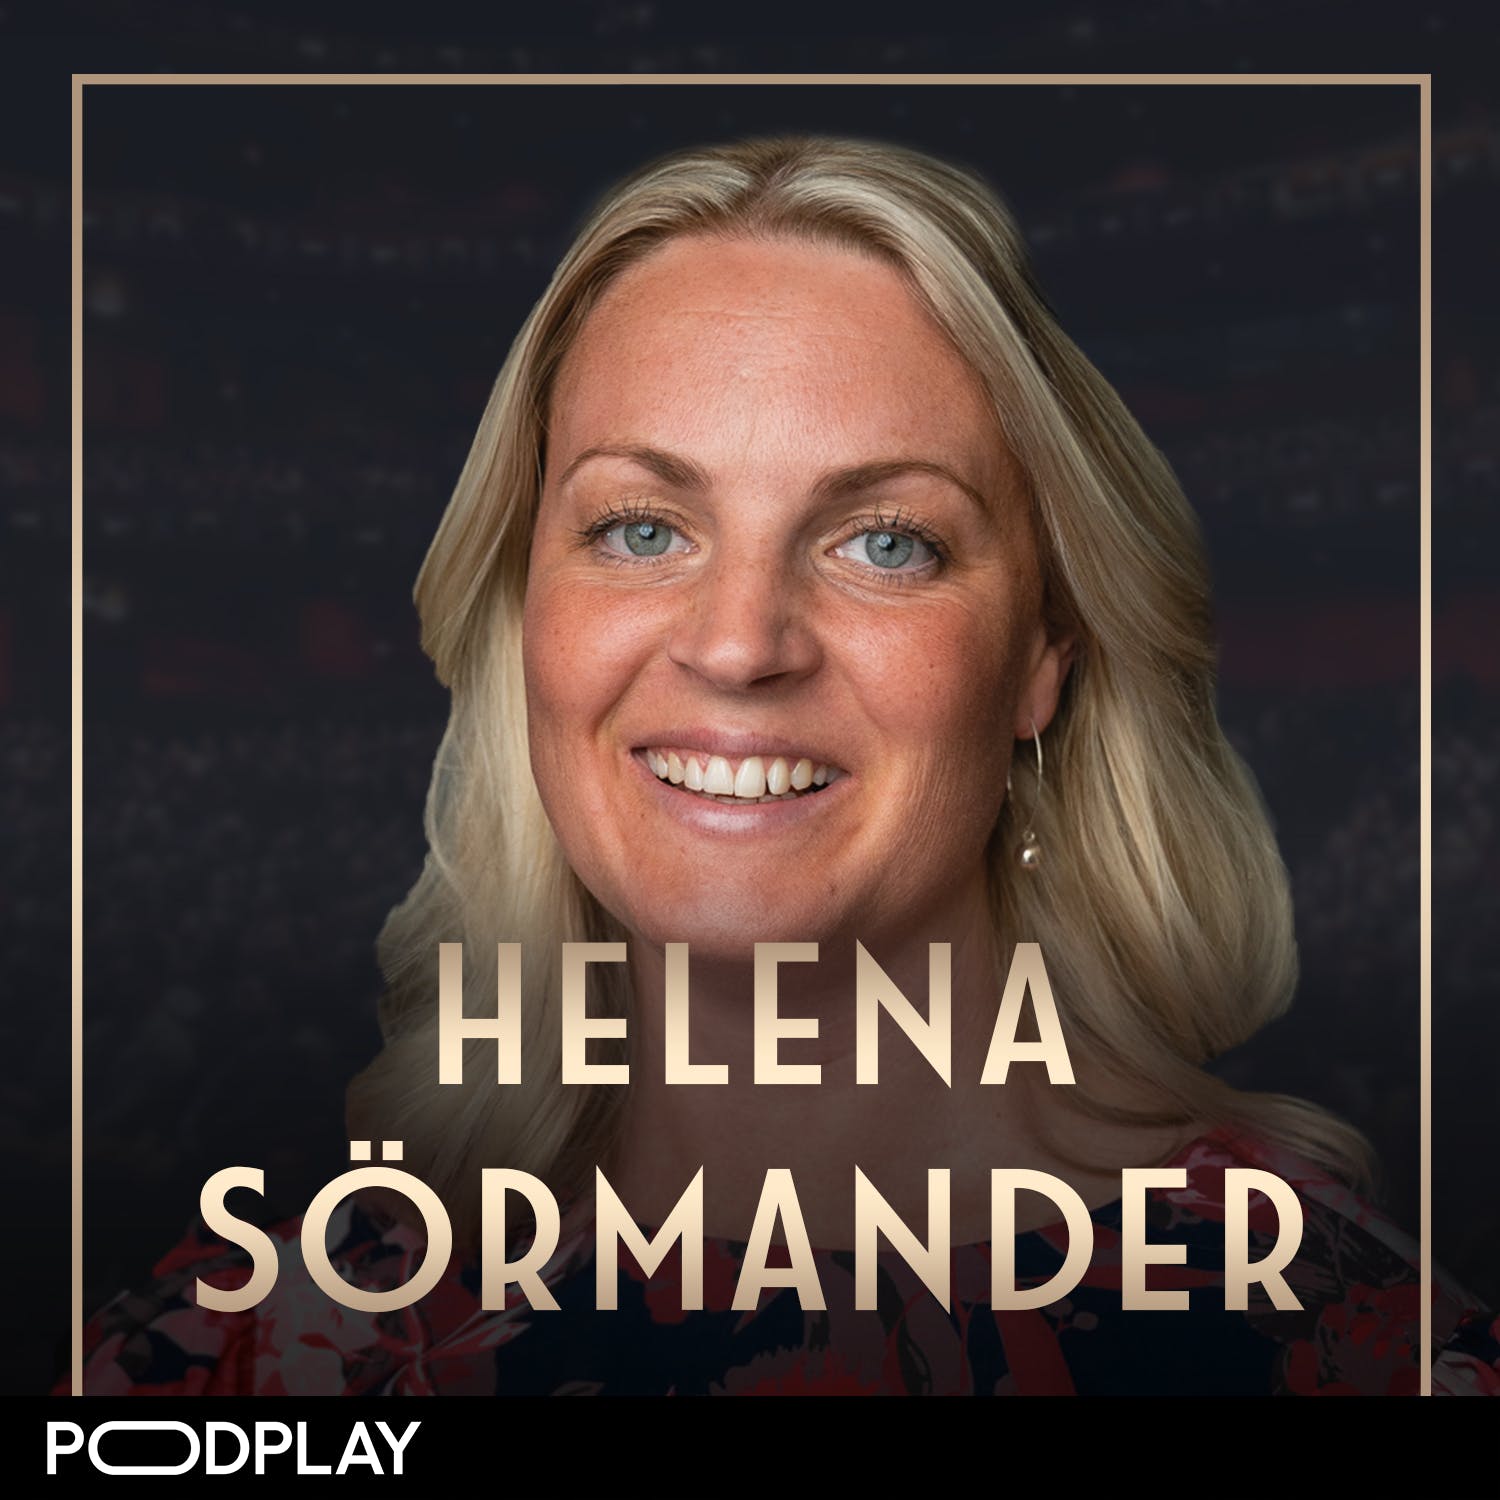 504. Helena Sörmander - "Mina föräldrar orsakade min dotters död"